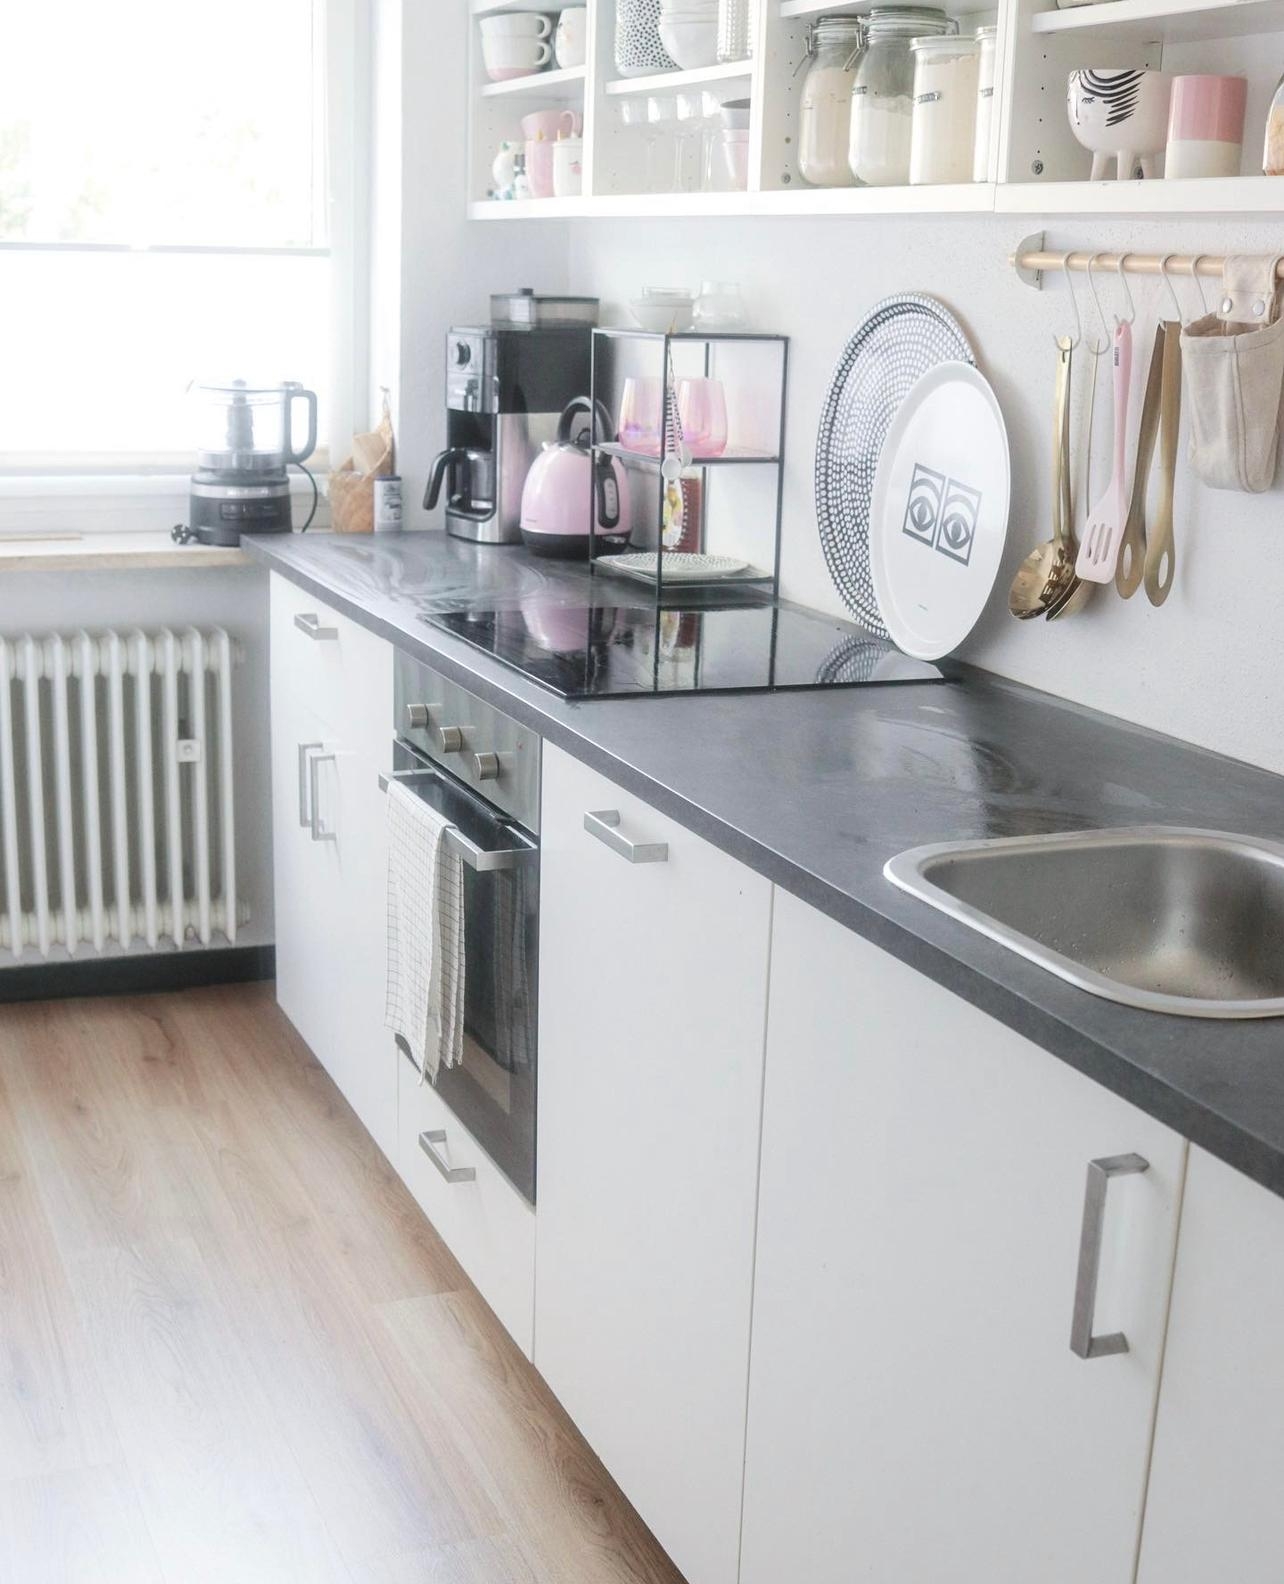 Neuer Boden. Raum sieht komplett anders aus 🤩
#skandi #skandiküche #scandinavianhome #whitekitchen #ikeaküche #laminat 